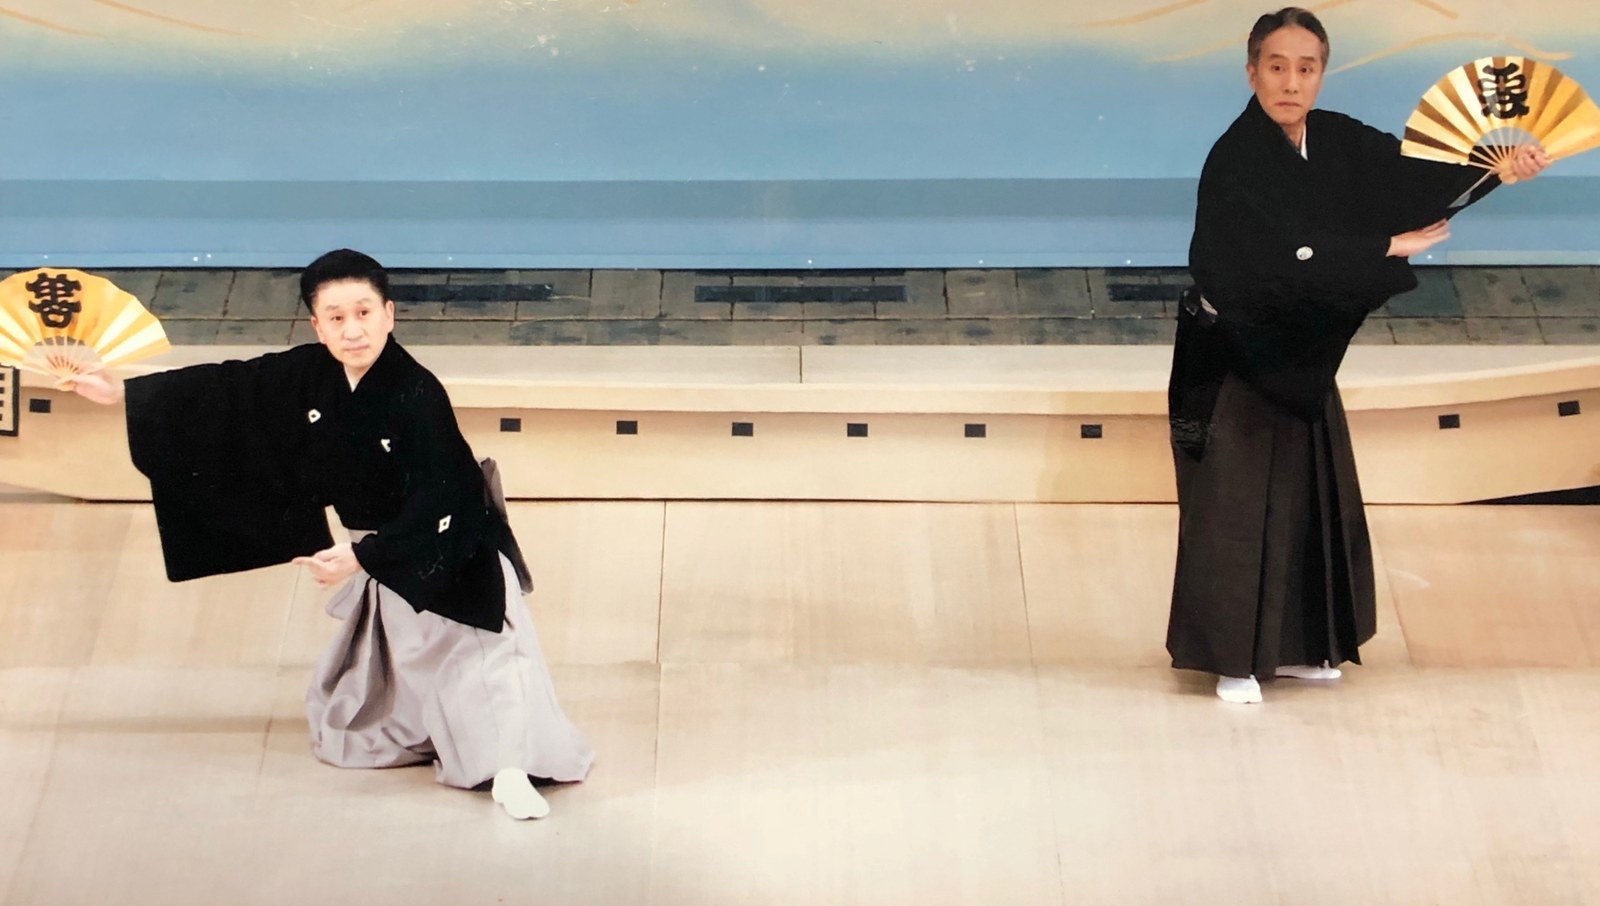 亡き親友 中村勘三郎との 約束 を果たしたい 病を乗り越え 私は歌舞伎座で舞う